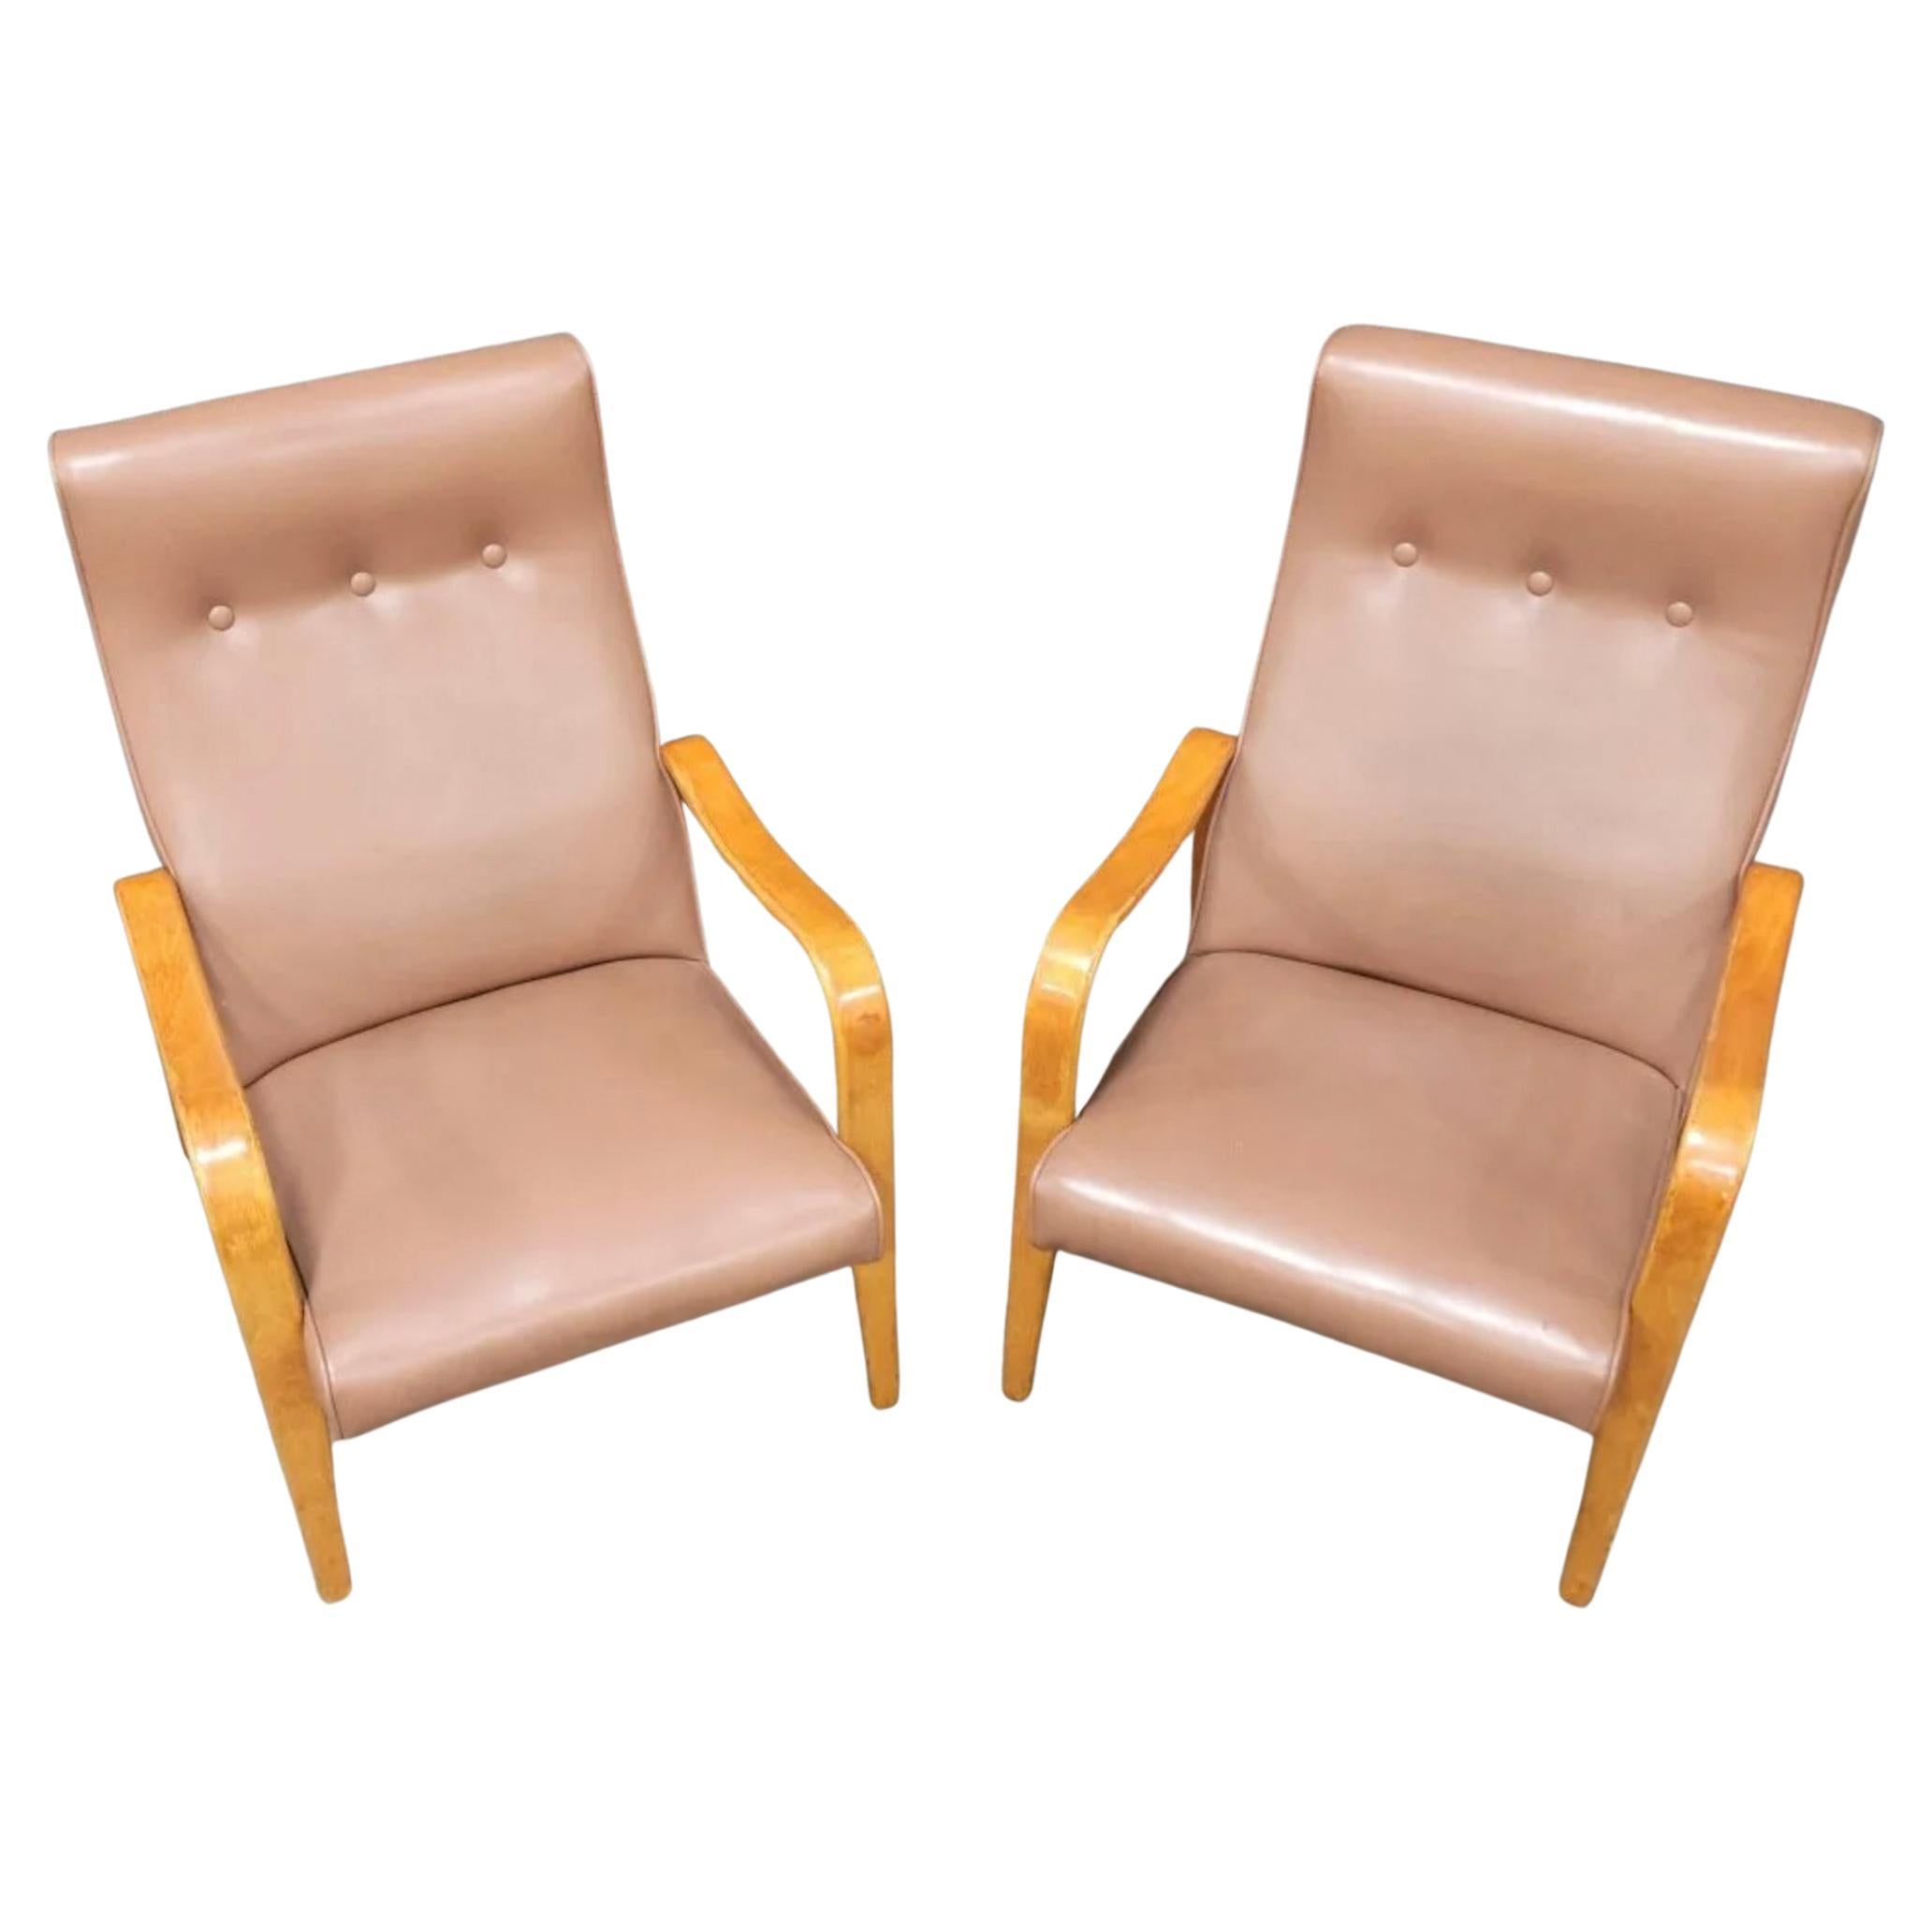 Paar moderne Thonet Bugholz-Birkenholz-Lounge-Sessel aus der Mitte des Jahrhunderts. Hat Original Medium Pastell Rose Farbe Vinyl Polsterung. Toller Vintage-Zustand. Zeitloses Stuhldesign von Thonet. Gebogene Armlehnen aus Birkenbugholz. Stühle